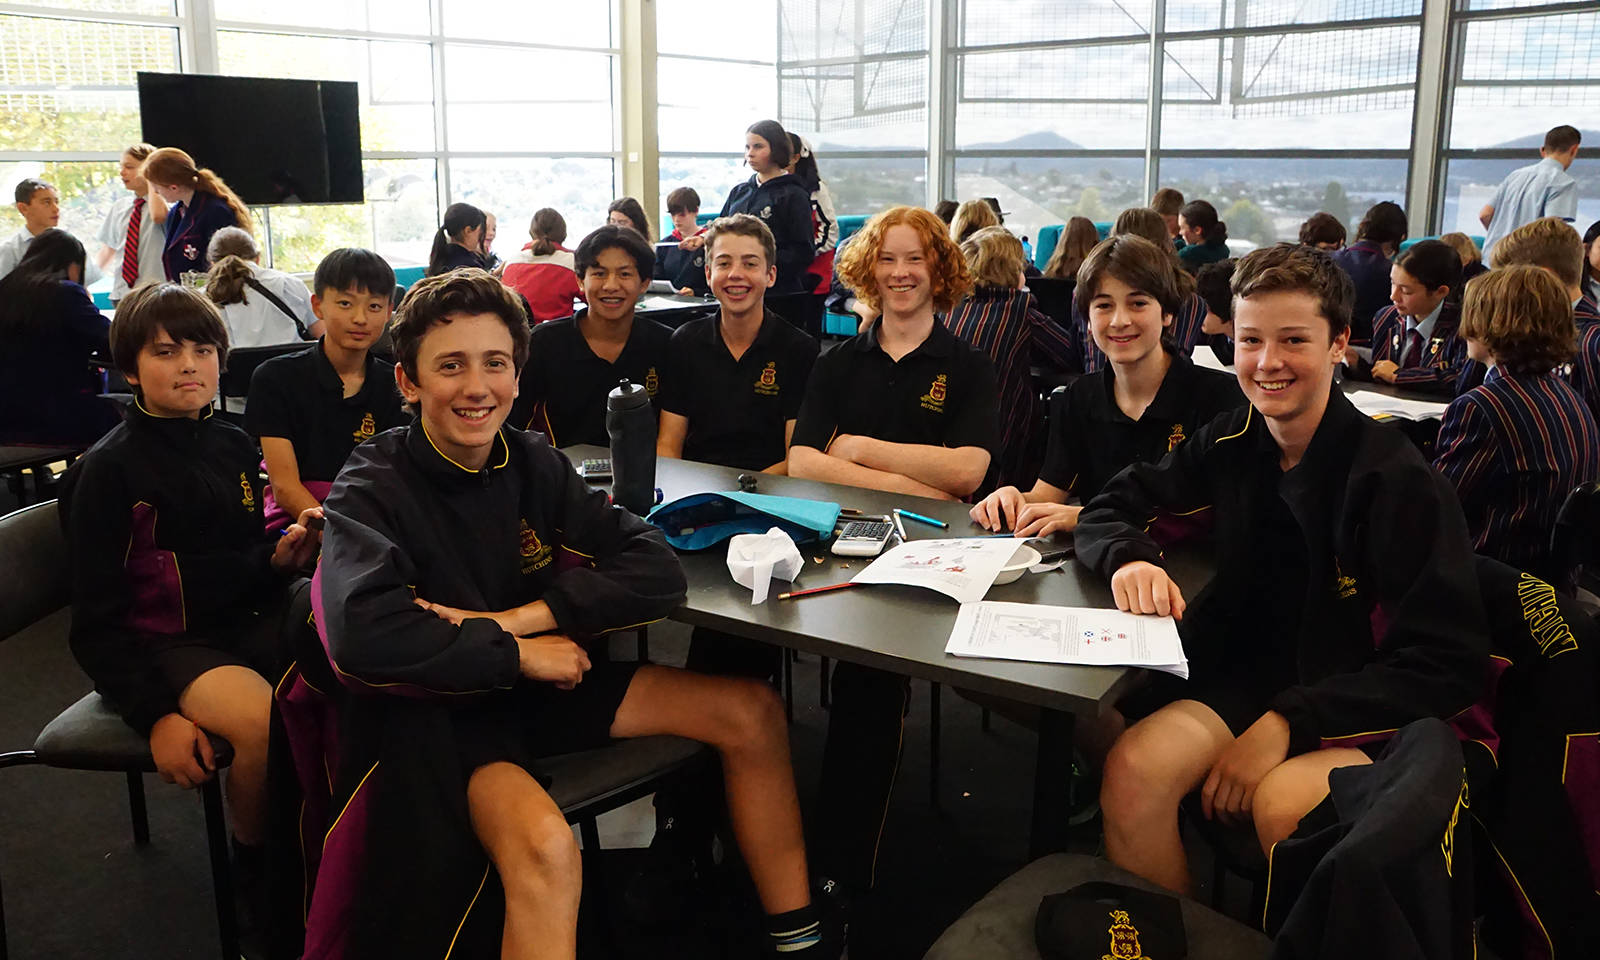 Students representing the School to participate in the da Vinci Decathlon